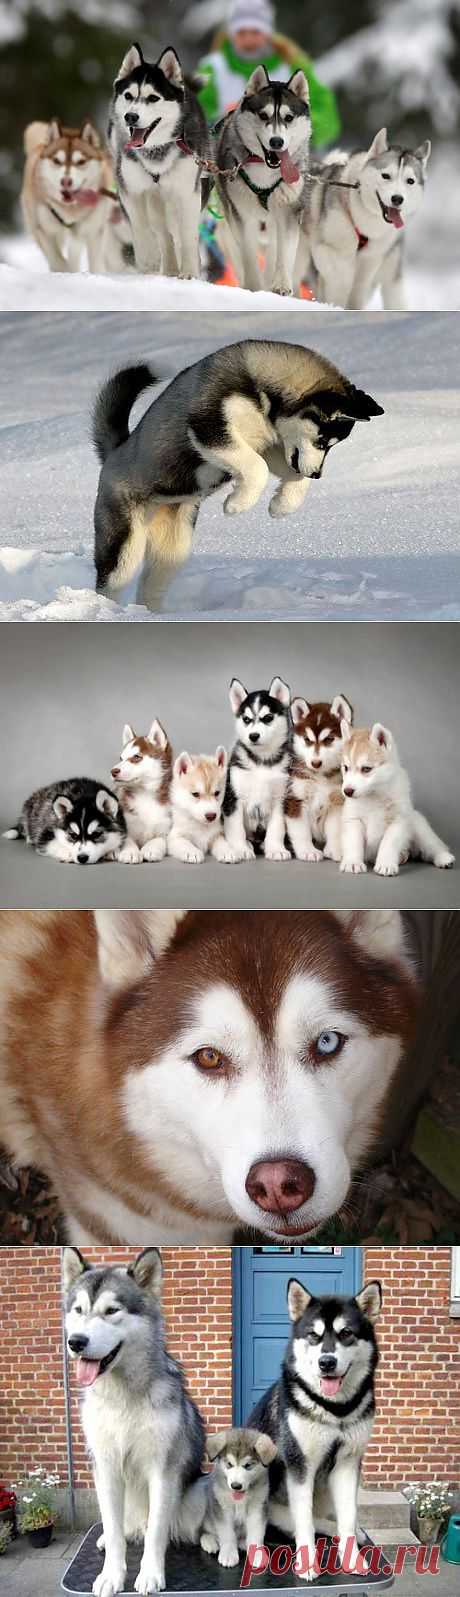 Сибирский хаски (Siberian Husky) – описание породы собаки, фото, щенки сибирской хаски, питомники | Animal.ru